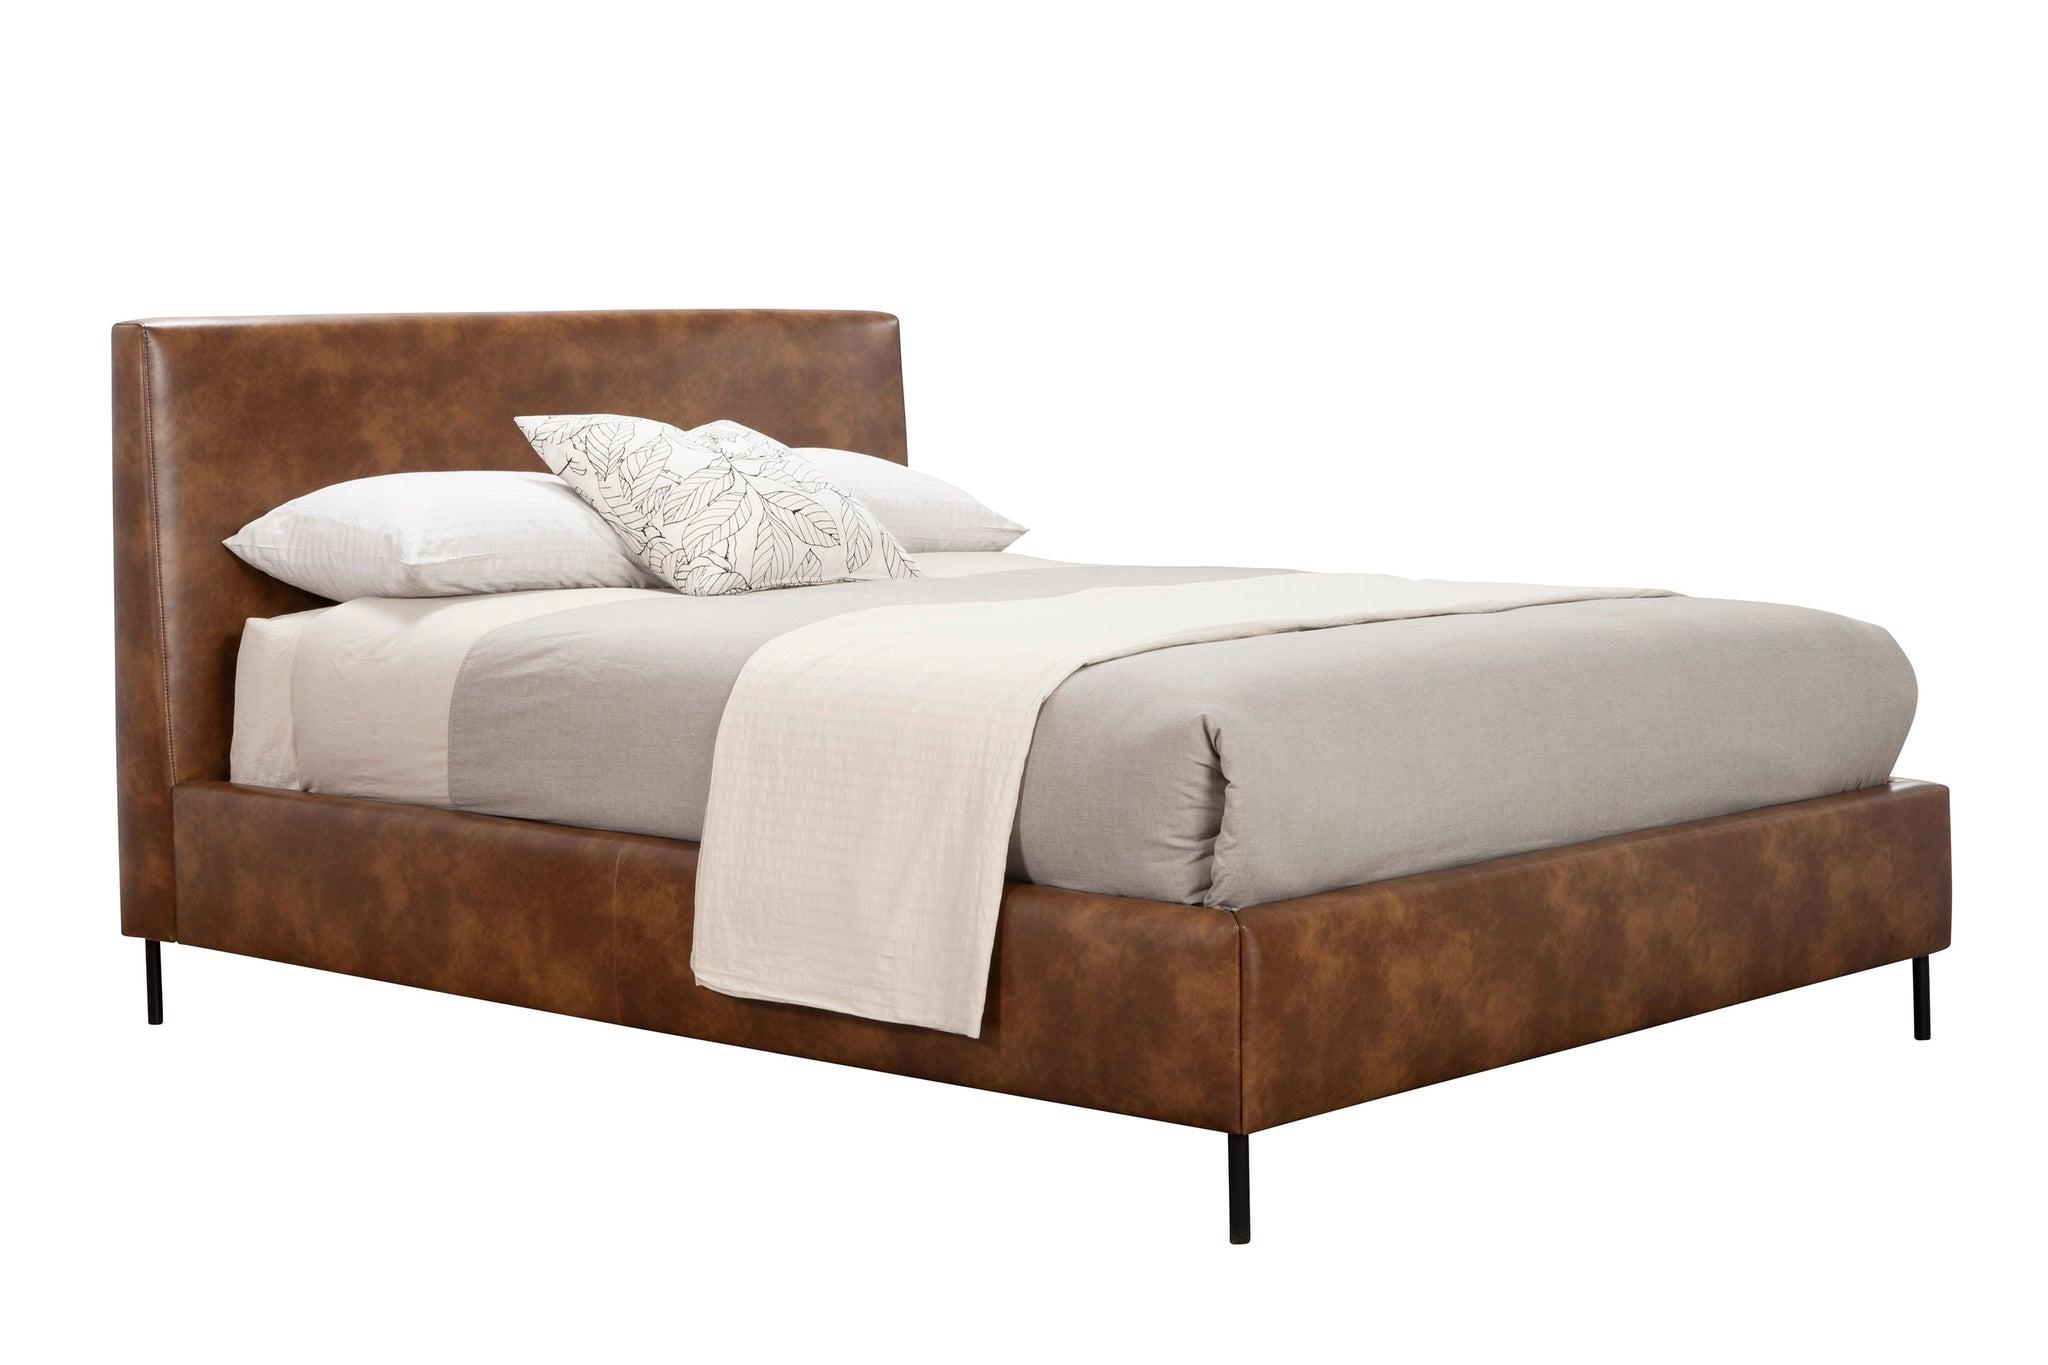 Modern, Rustic Platform Bed SOPHIA 6902Q-BRN in Brown Faux Leather